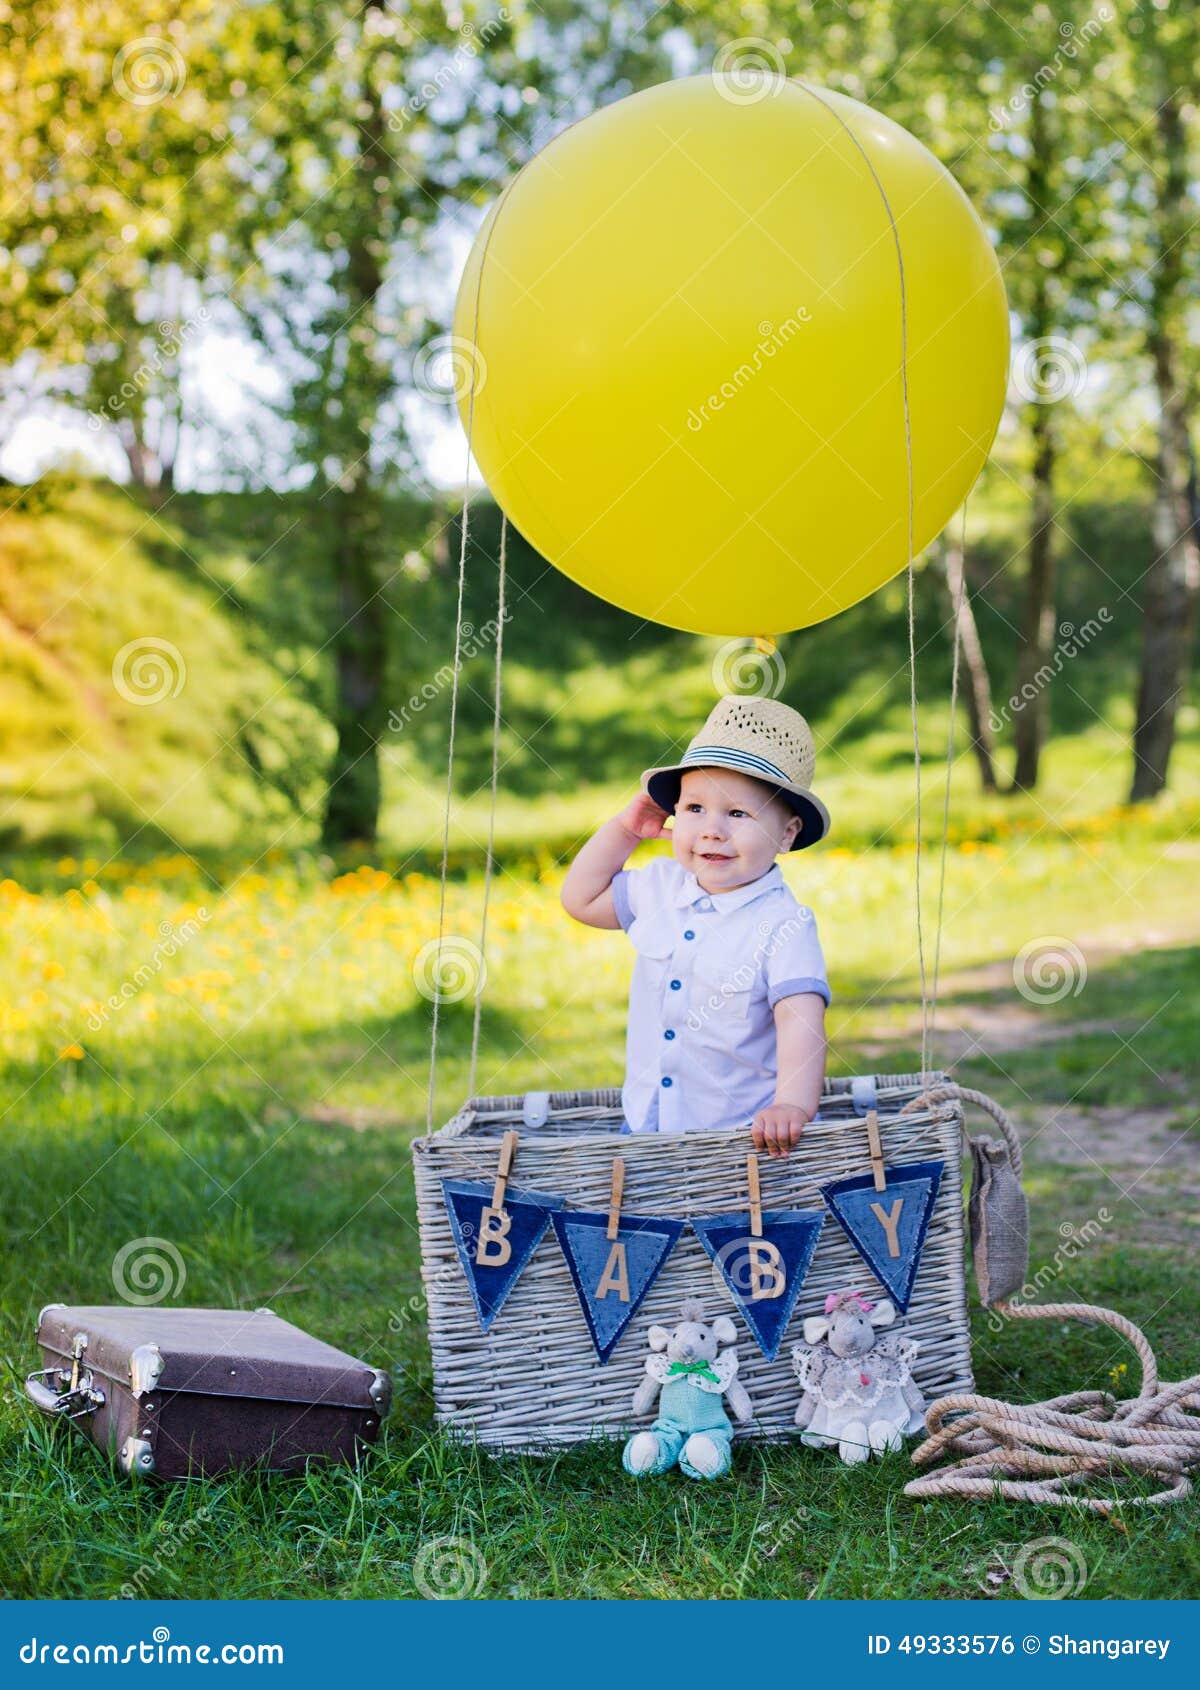 Корзина с шаром для фотосессии. Воздушный шар с корзиной для фотосессии. Фотосессия с воздушным шаром детская. Корзина с воздушными шарами для фотосессии. Фотозона воздушный шар с корзиной.